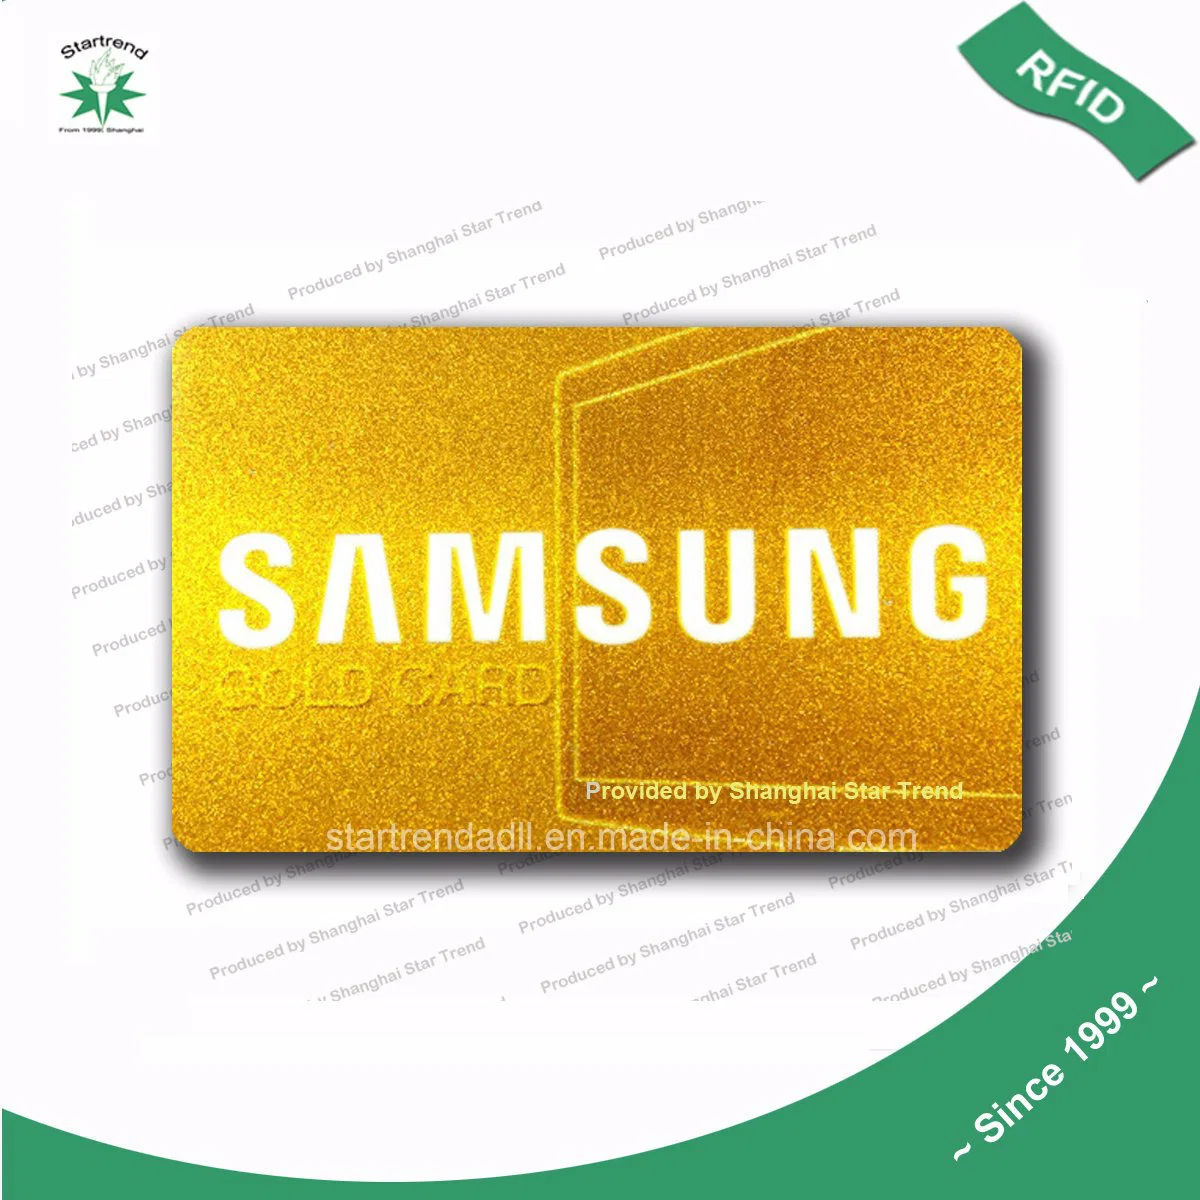 O Plástico Cartão VIP Cartão Fidelidade Cartão de PVC com tela de Seda Gold/Carimbo Quente Gold/gravação a laser Gold